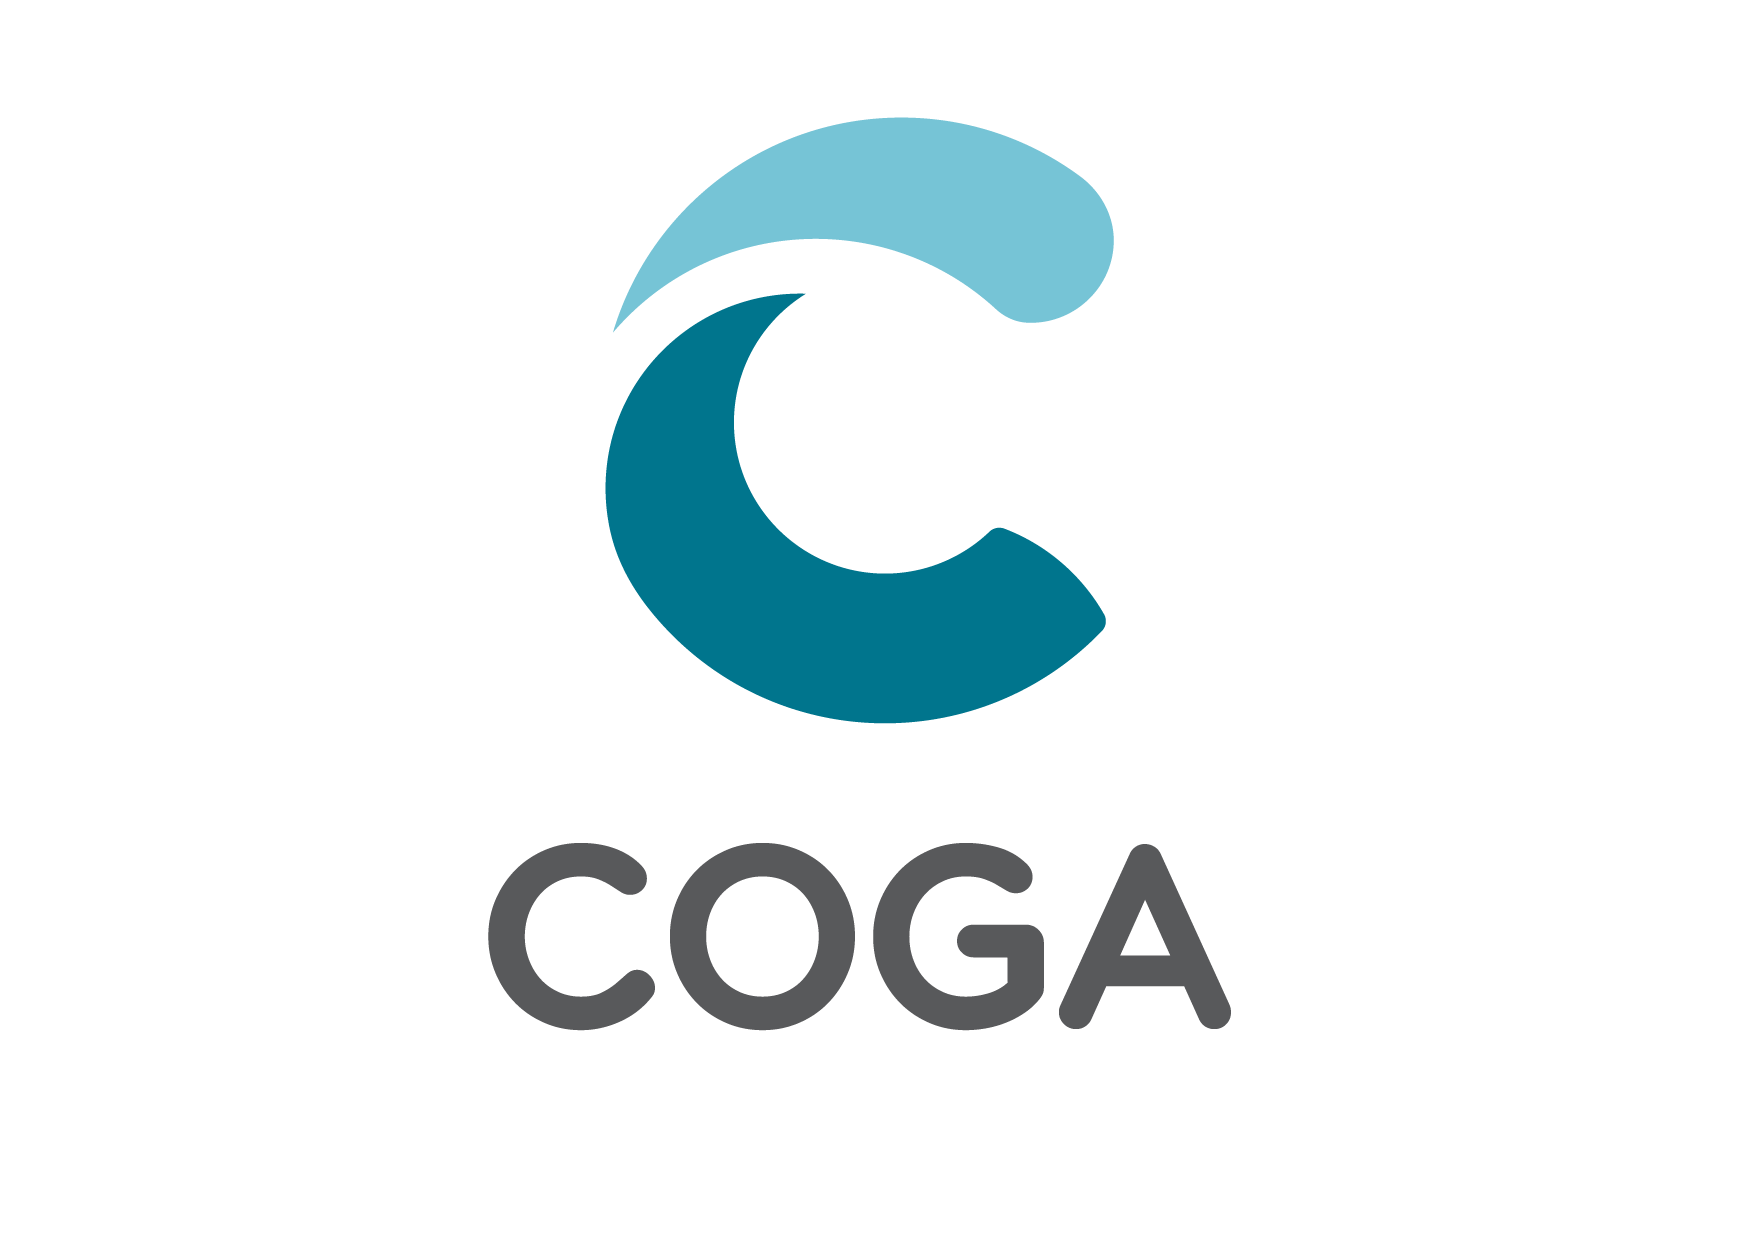 4.Logo COGA Vertical - Principal (Sin nombre principal) - Copy.png  by HaroldY